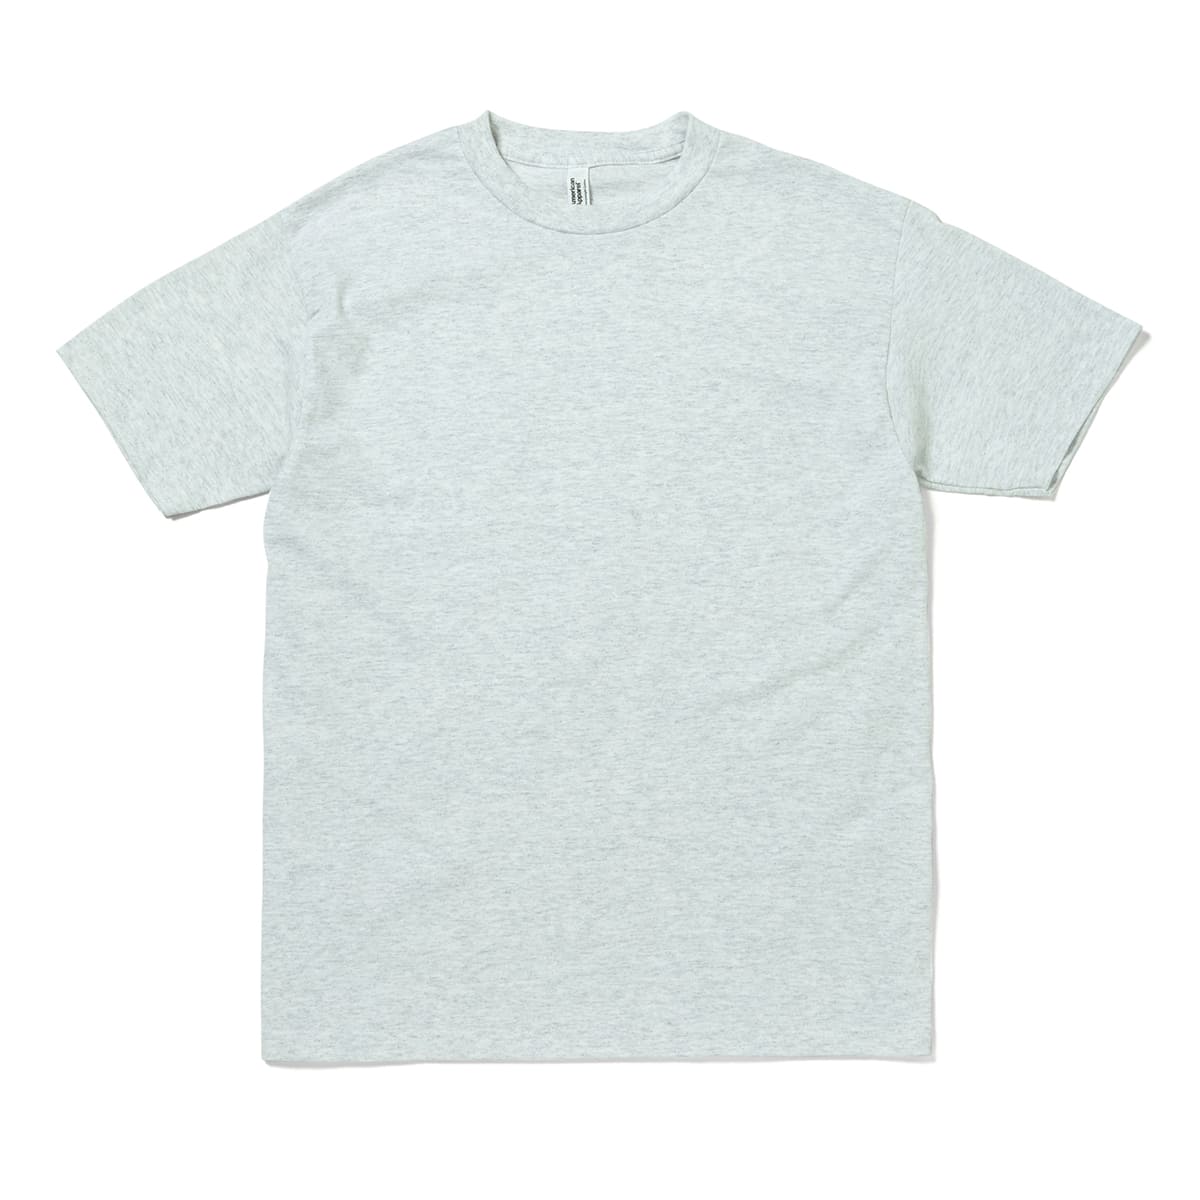 6.0oz ユニセックス Tシャツ | メンズ | 1枚 | 1301 | アッシュグレー